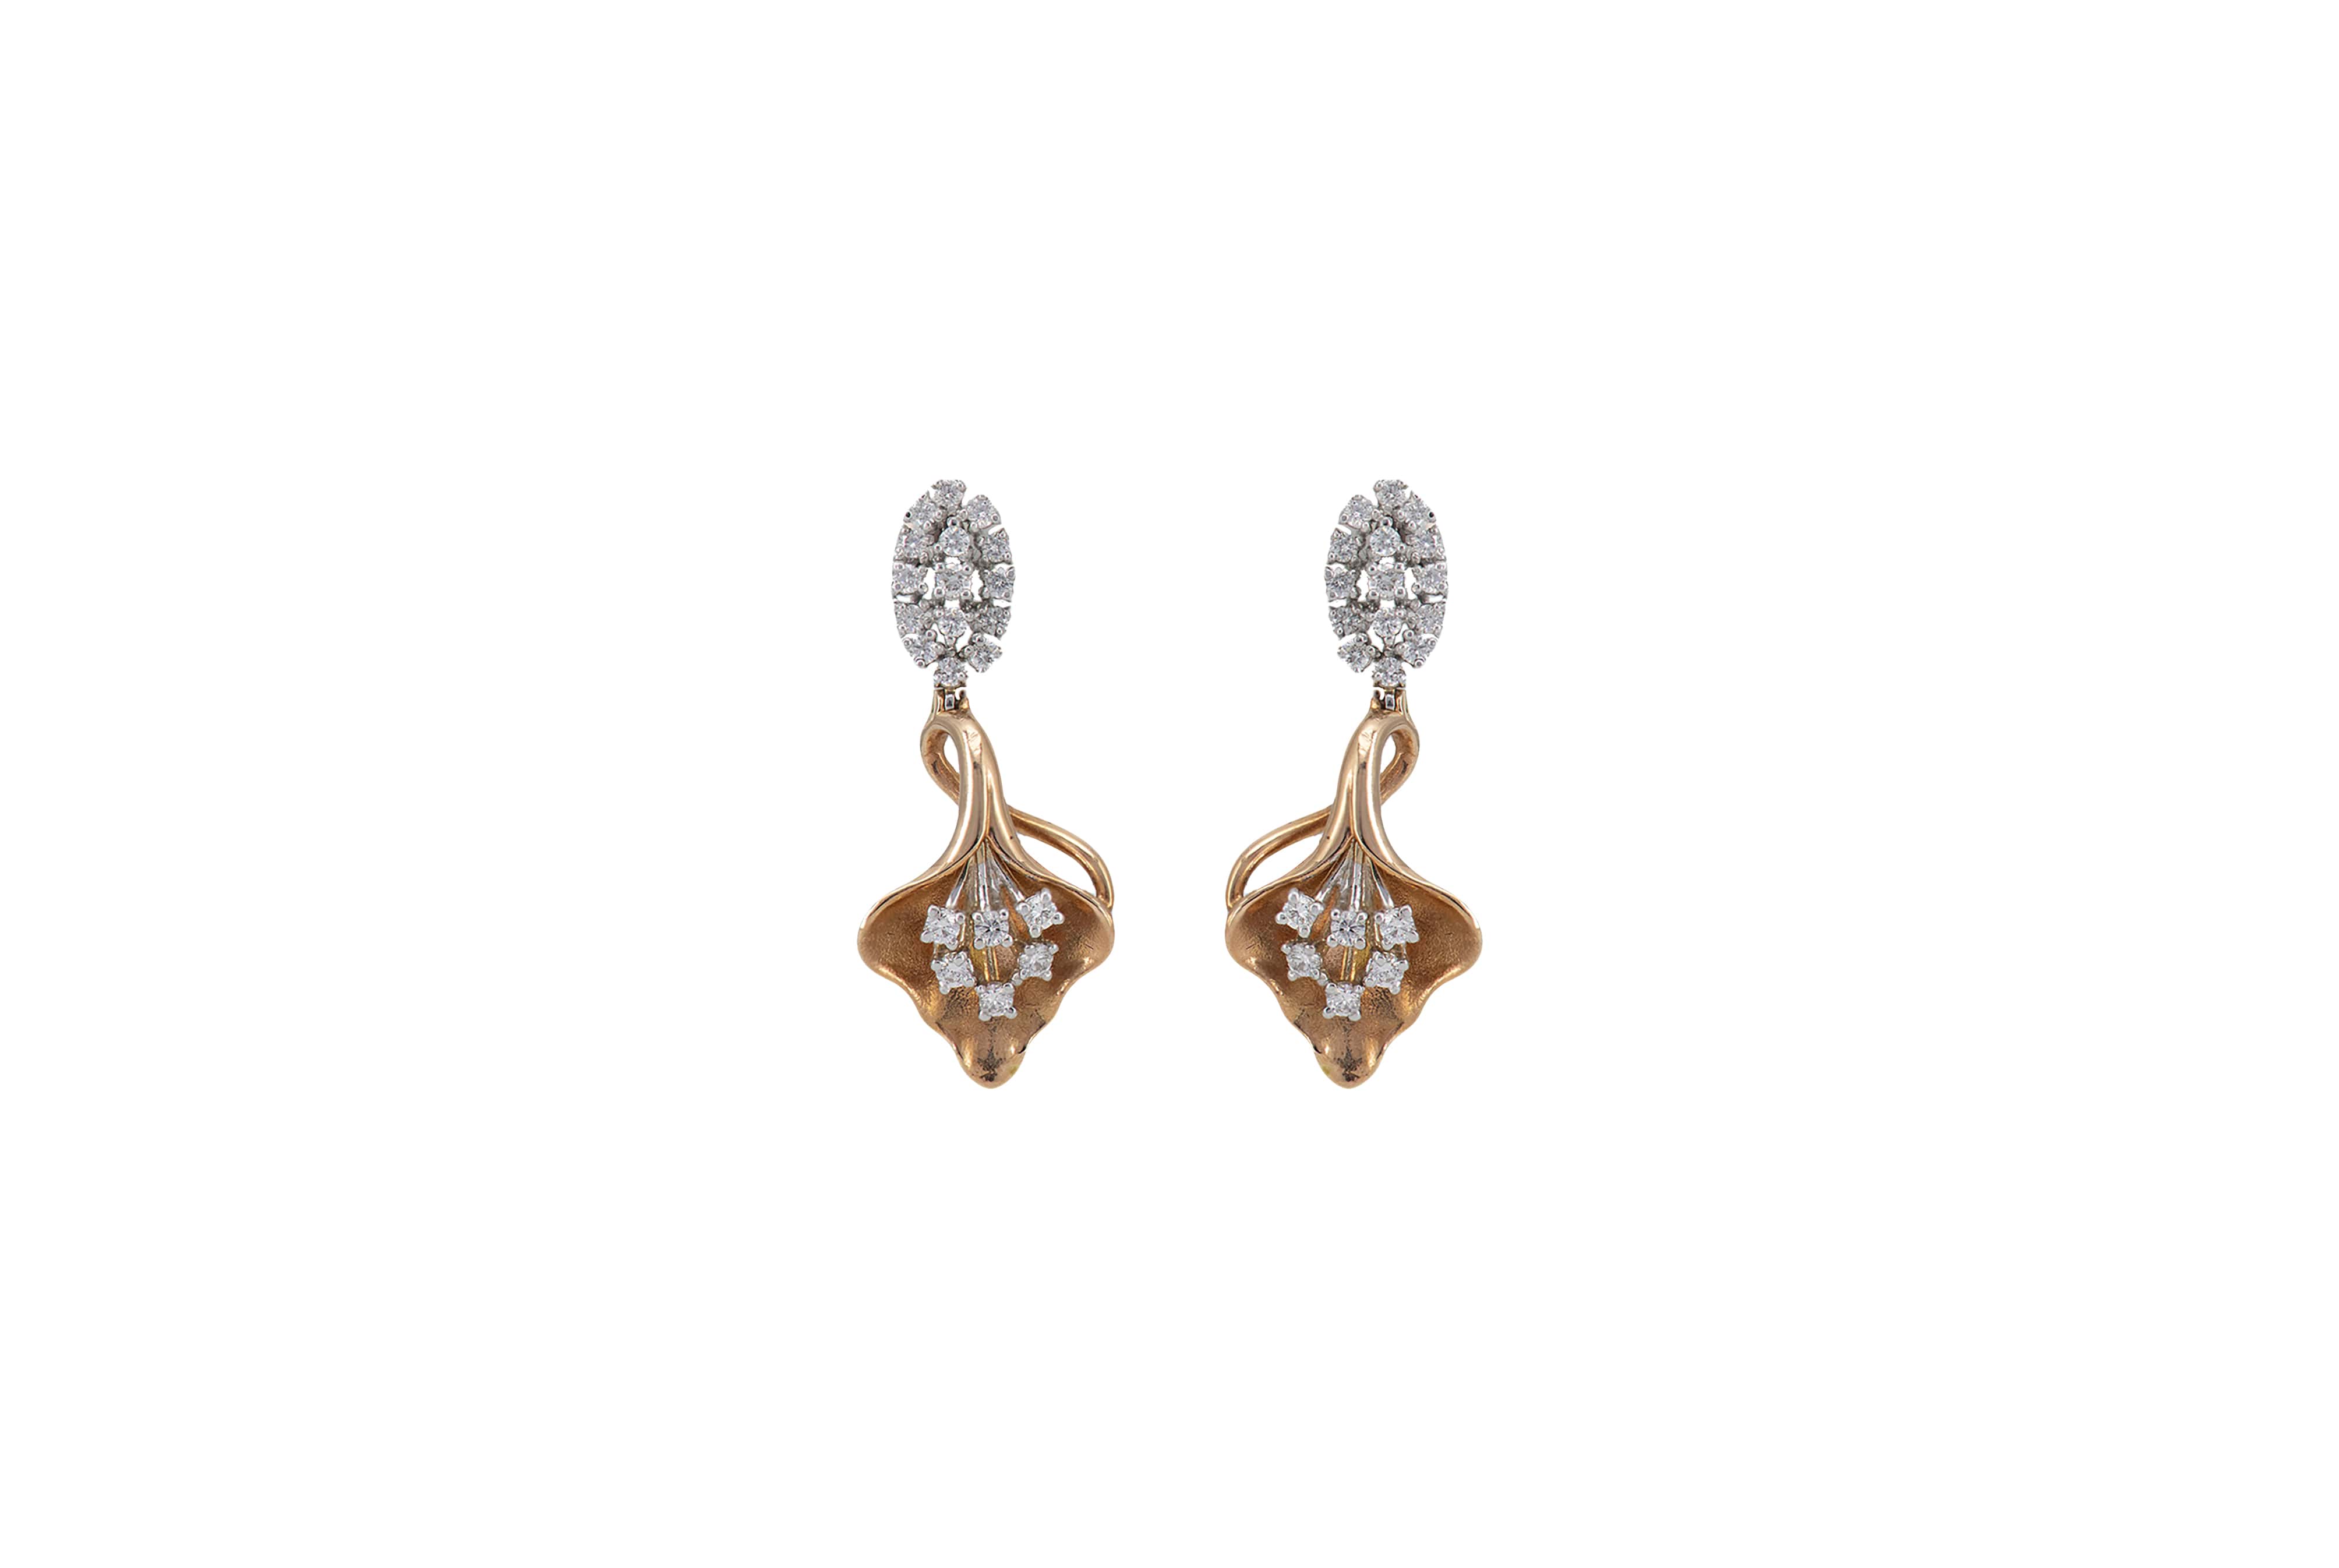 Debossed Diamond Earrings